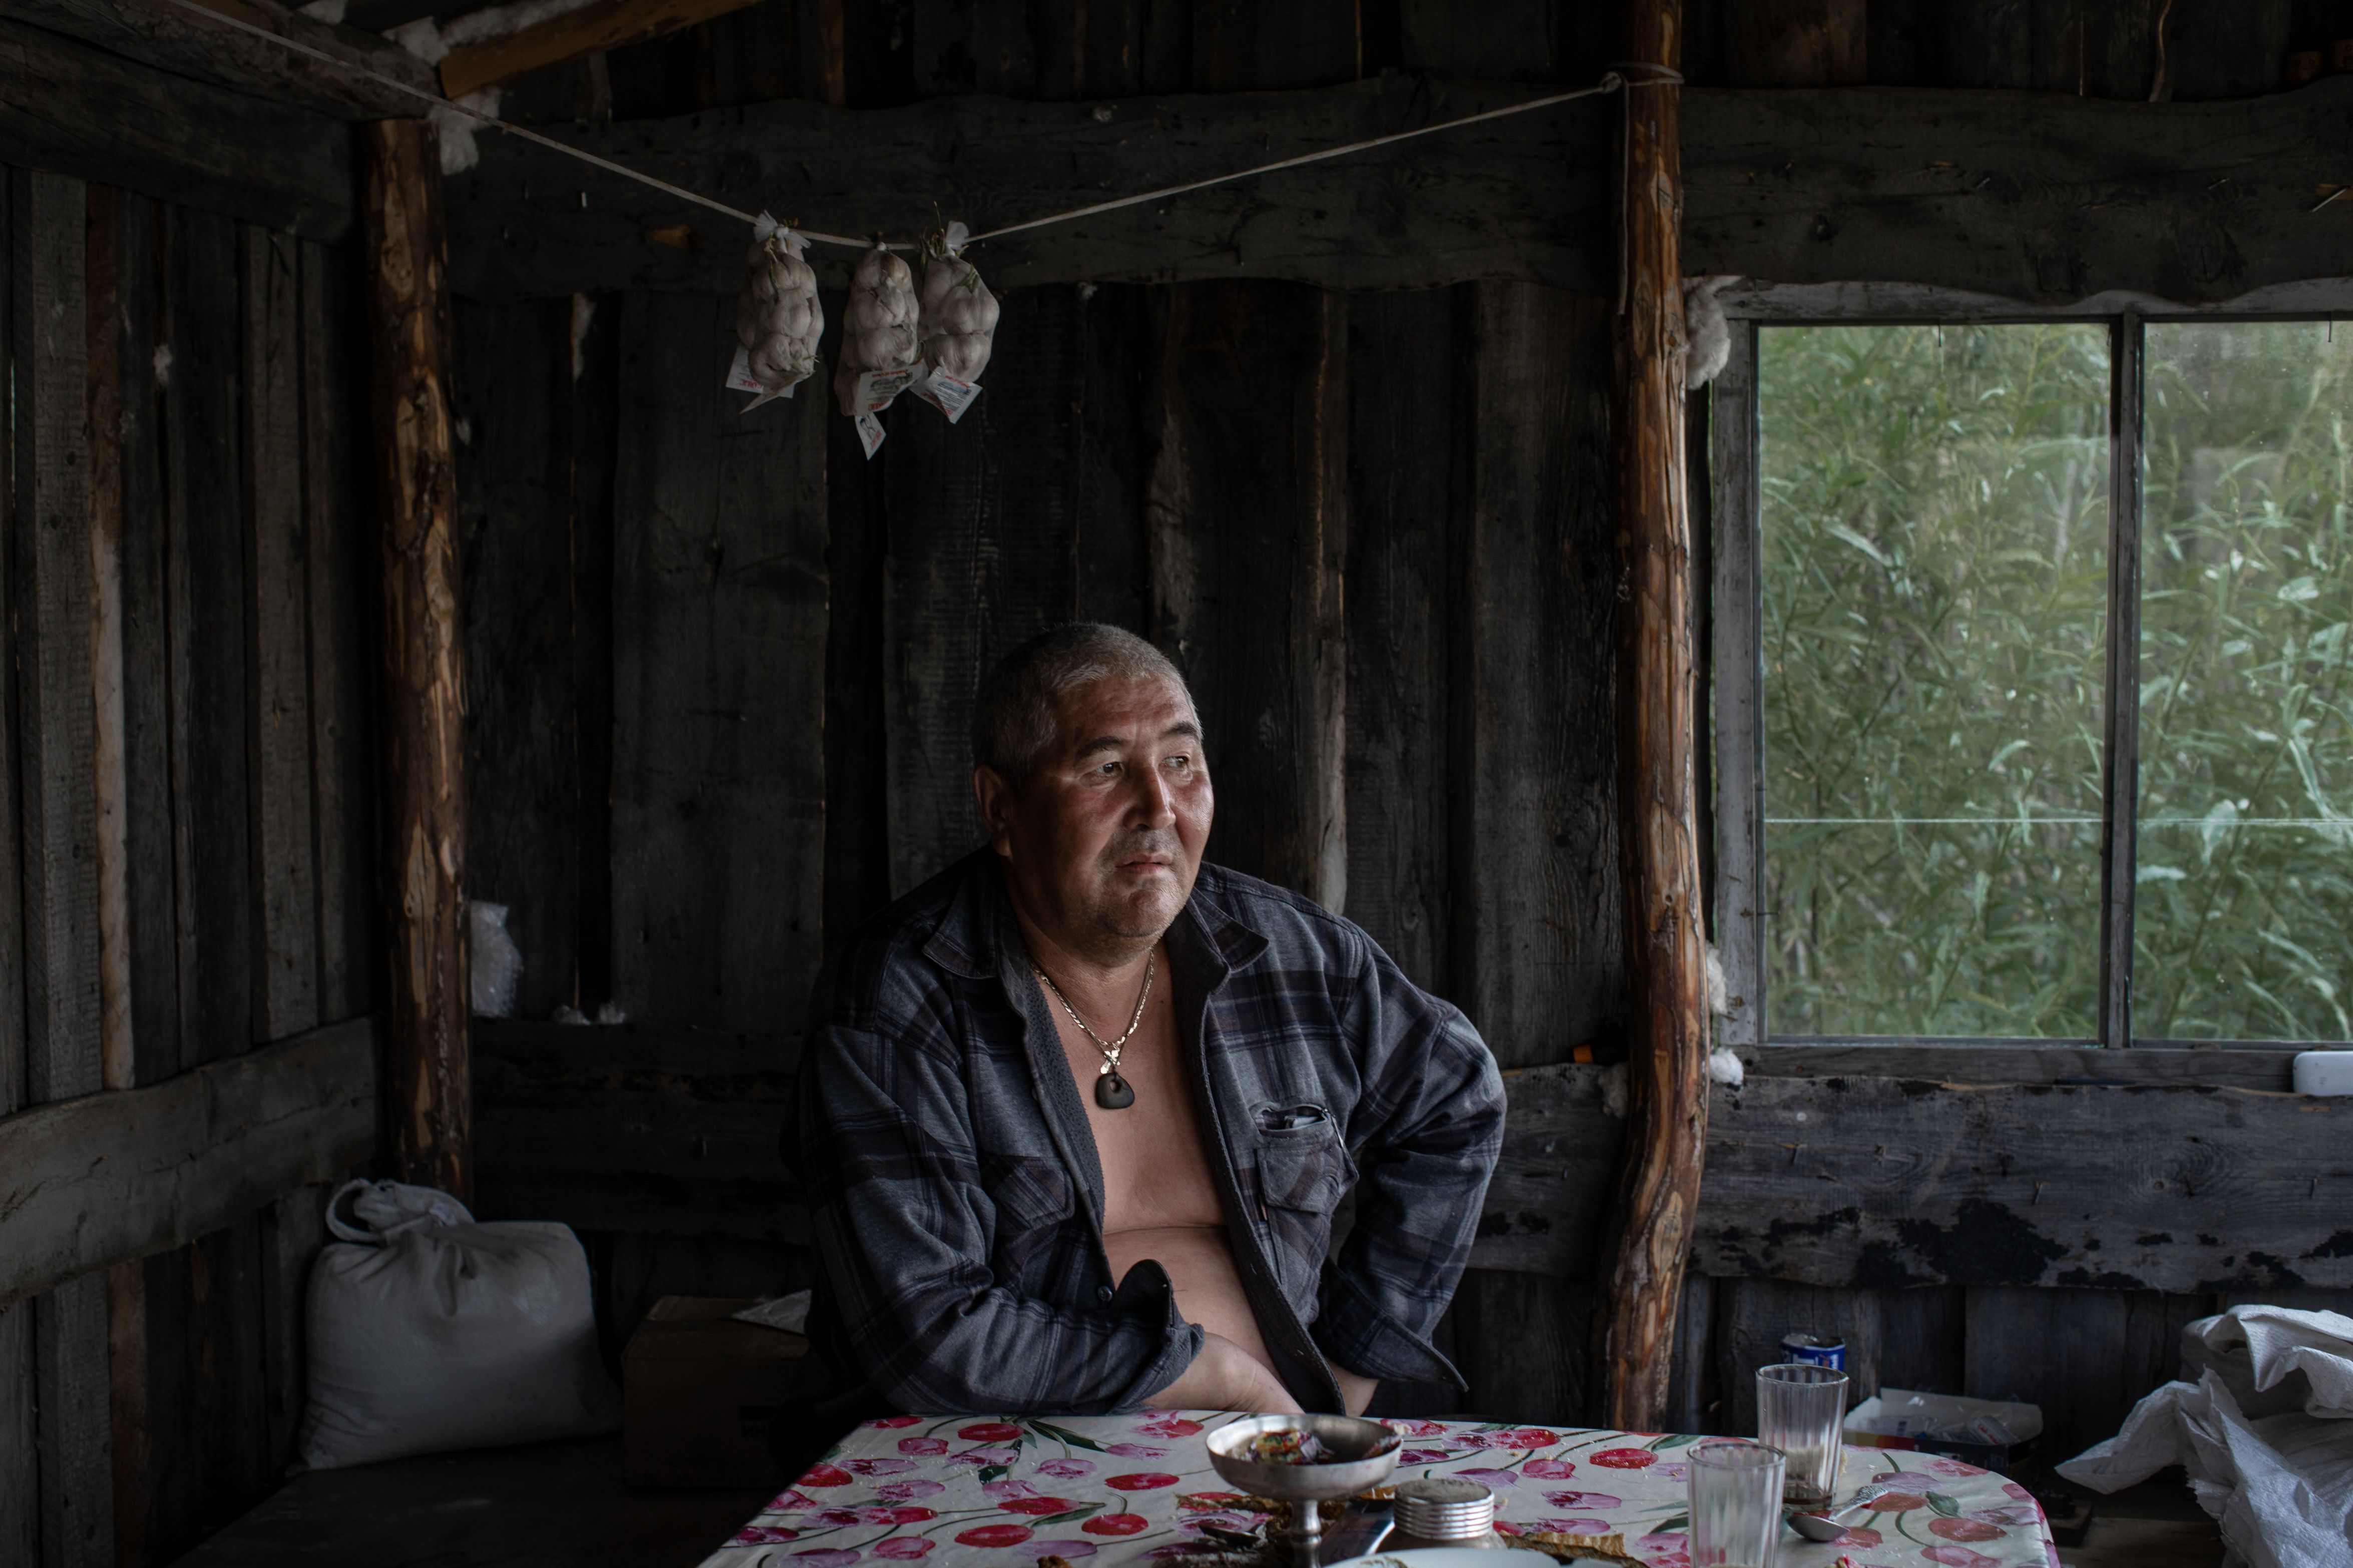 Appolinariy H. Popov, de 55 años, construyó una pequeña cabaña en Vyatkino, al norte de Srednekolimsk, en un acantilado con vistas al río Kolimá. Las inundaciones afectaron muchas edificaciones en la zona. (Emile Ducke/The New York Times)